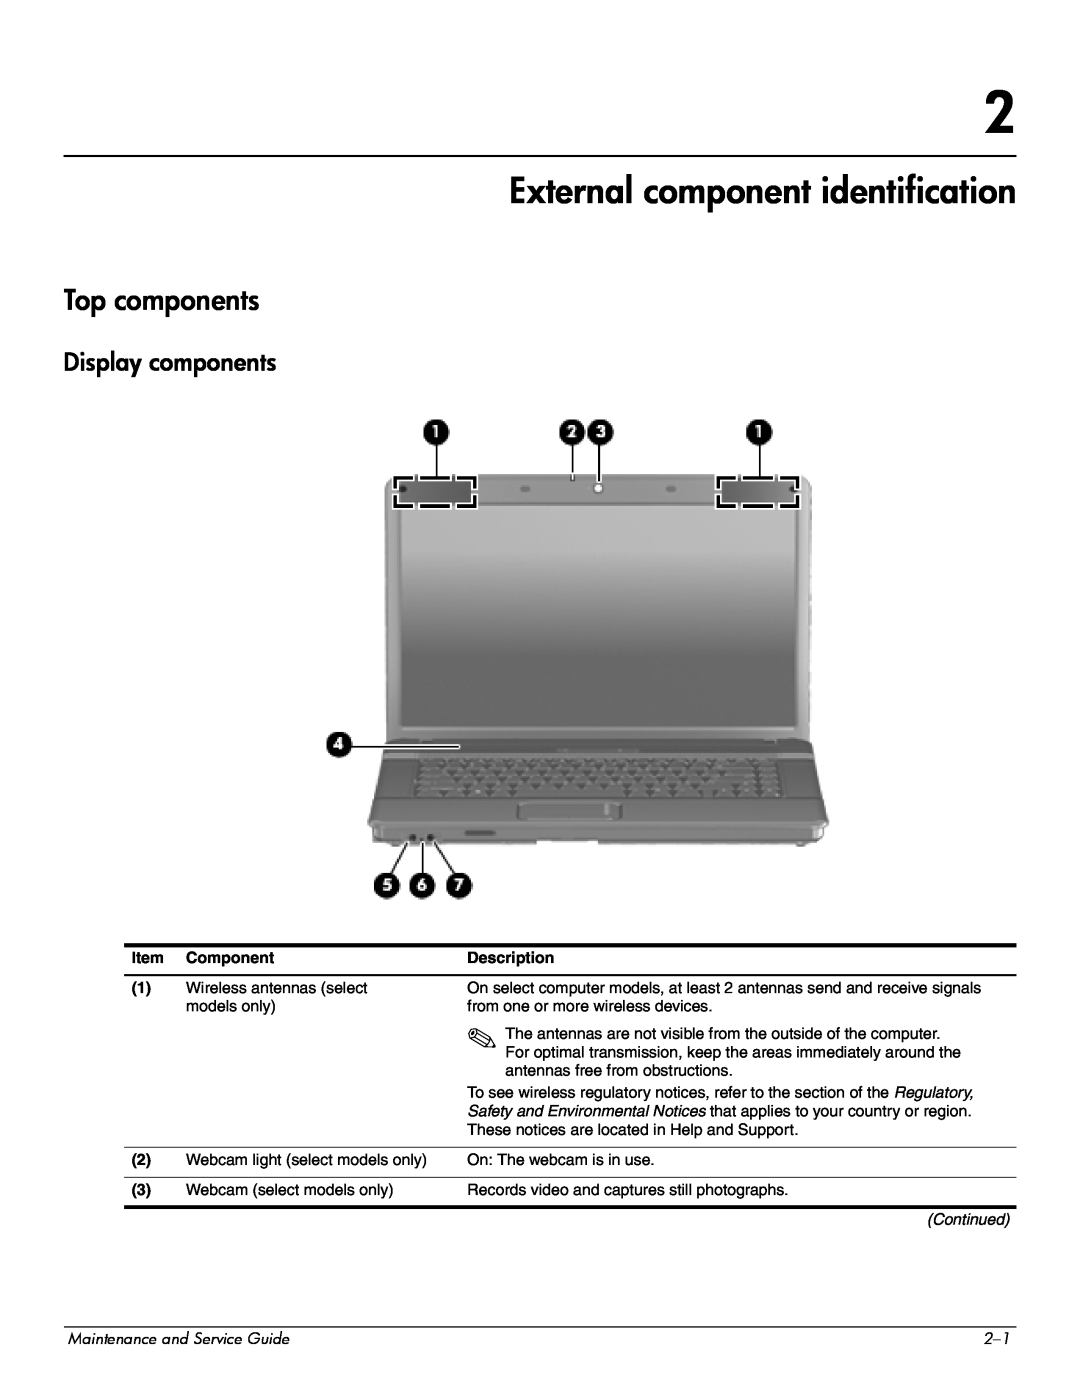 Compaq 510, 511, 515 manual External component identification, Top components, Display components 